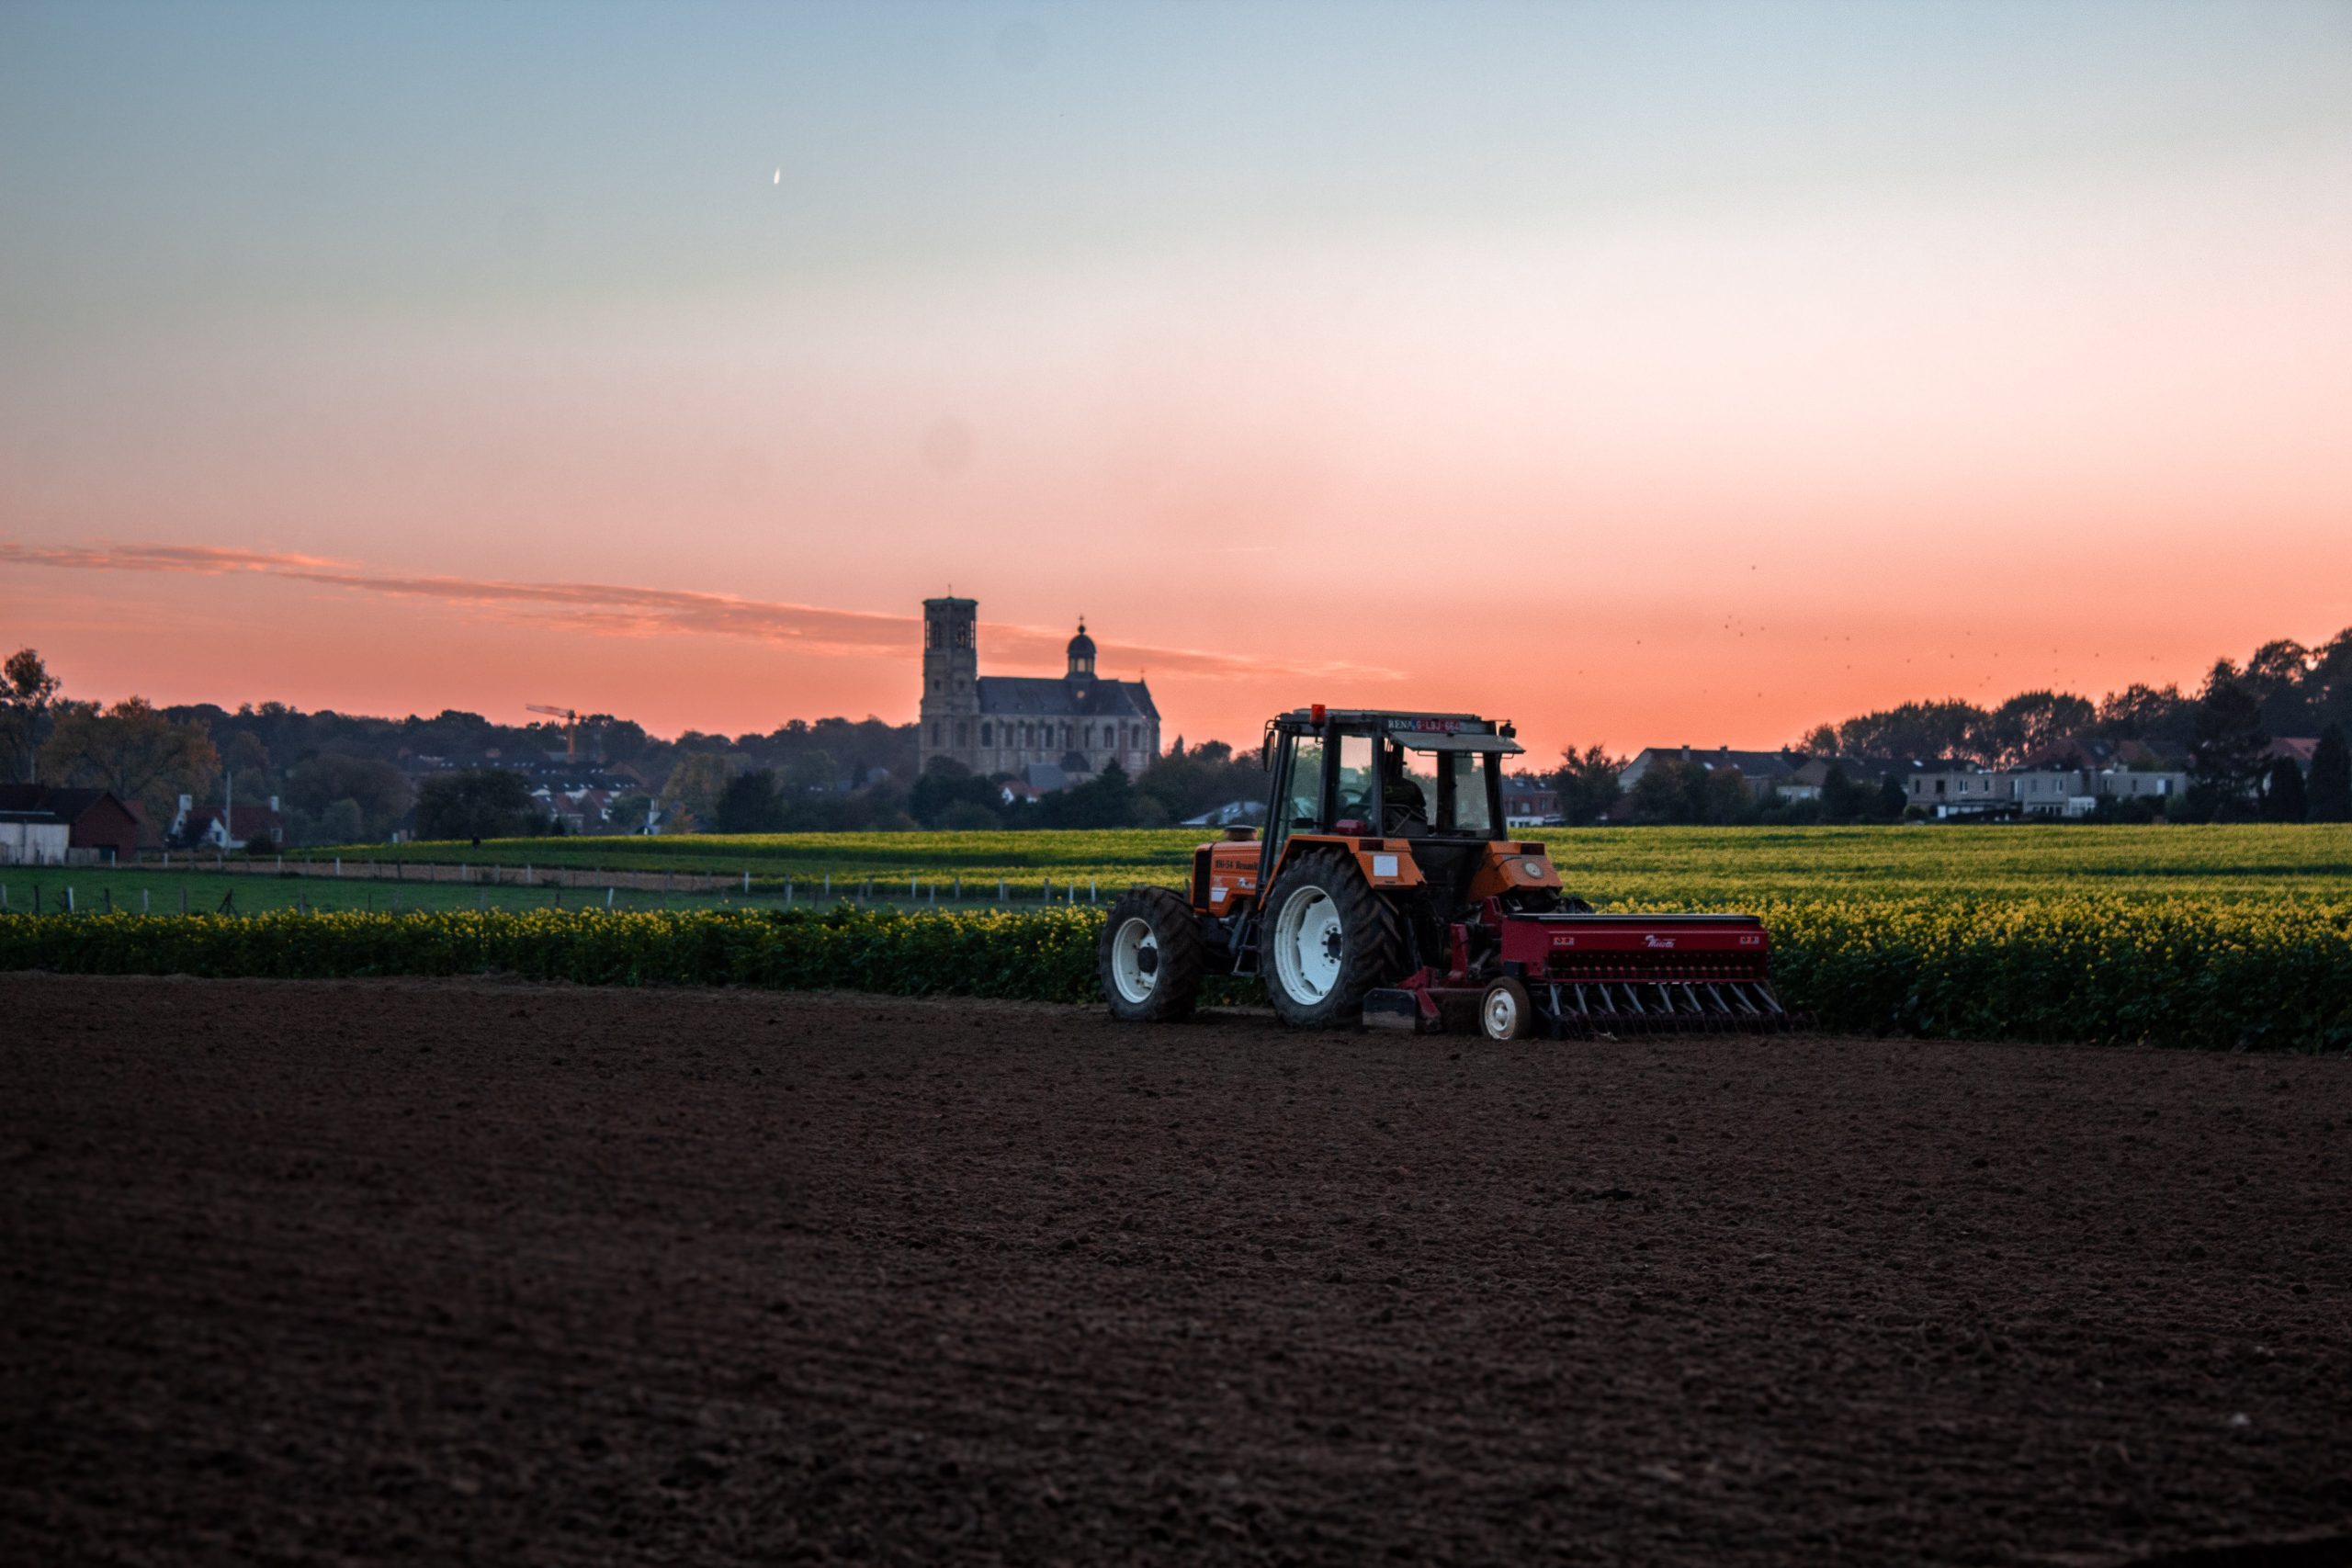 Una imagen de un agricultor preparando el campo para la siembra. El agricultor está usando un tractor para arar el suelo